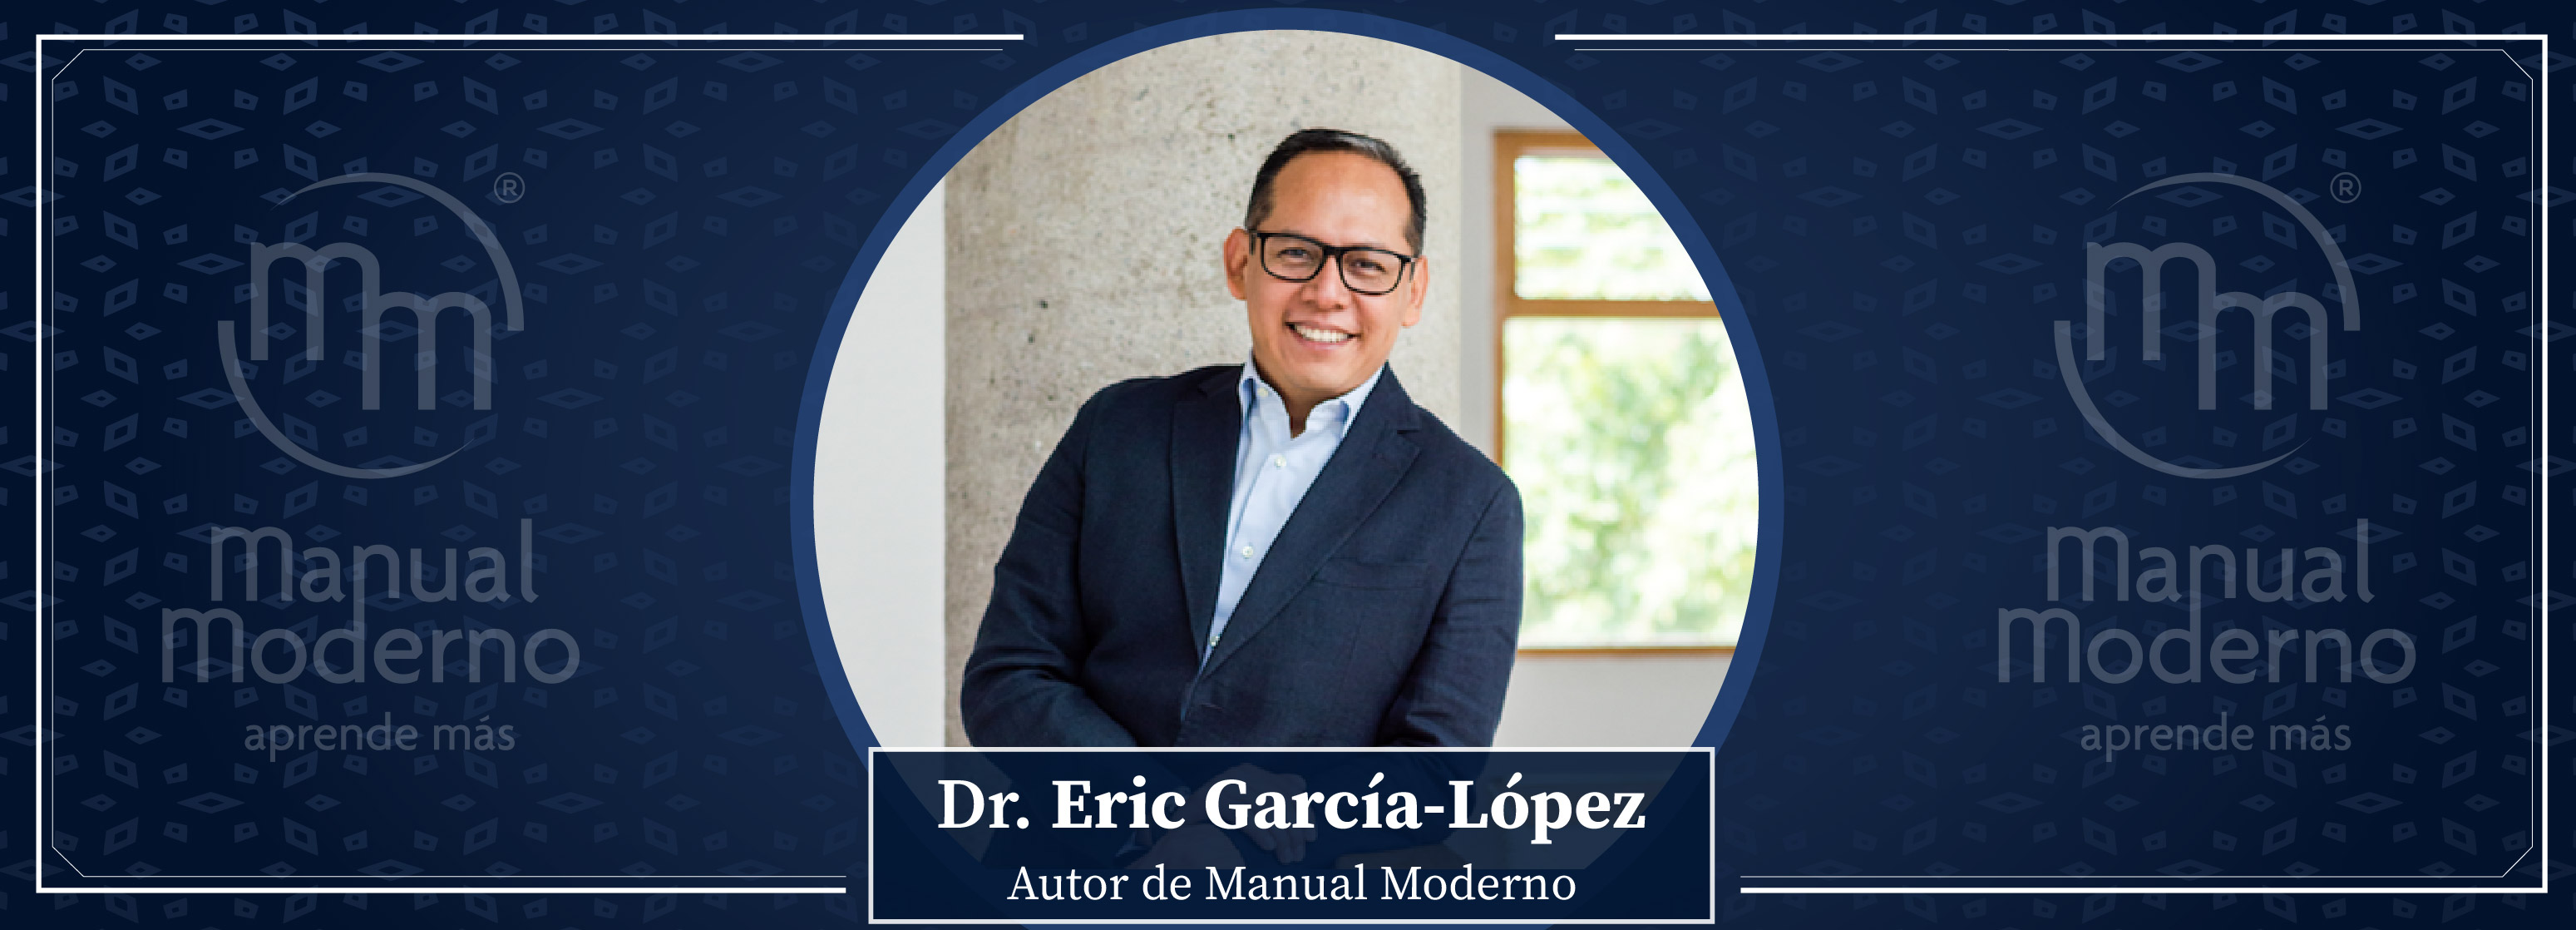 Nuestros Autores. Dr. Eric García-López